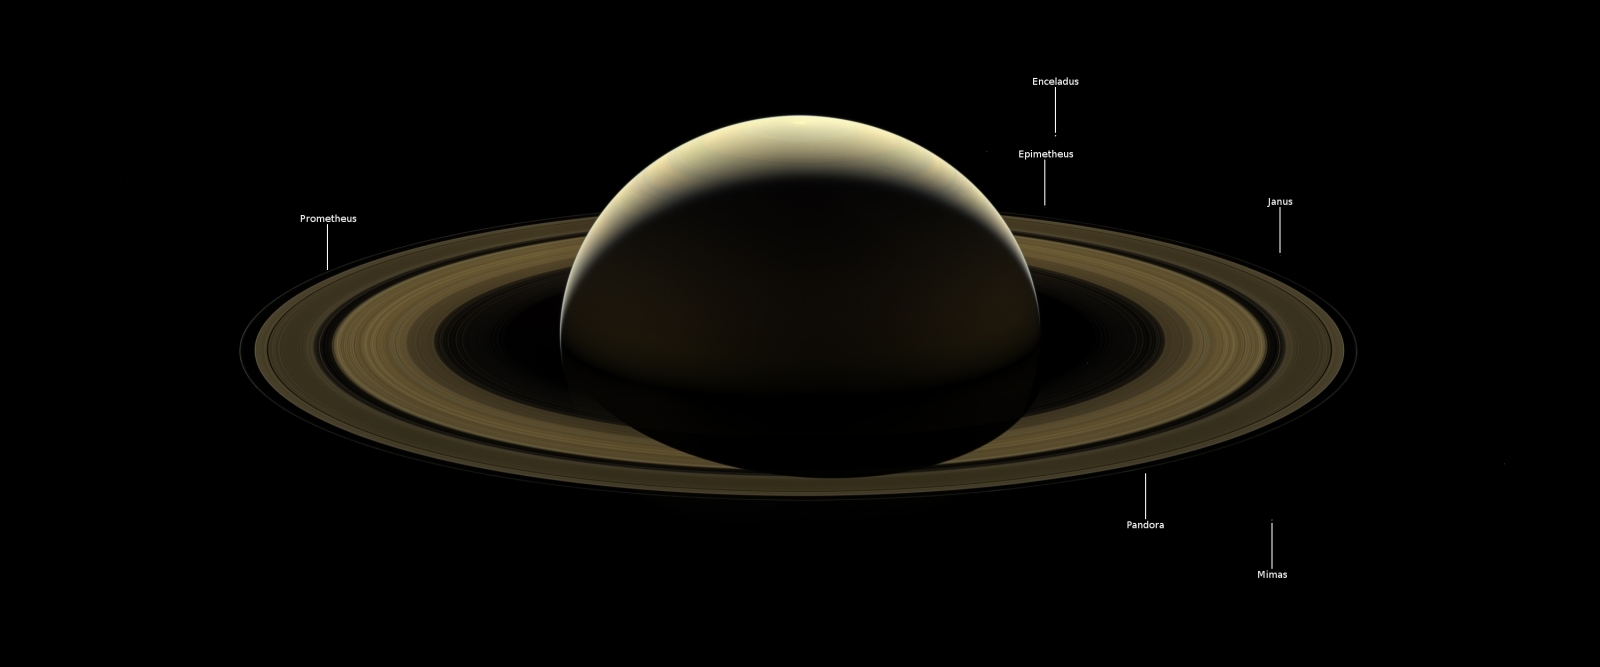 Cassini final image